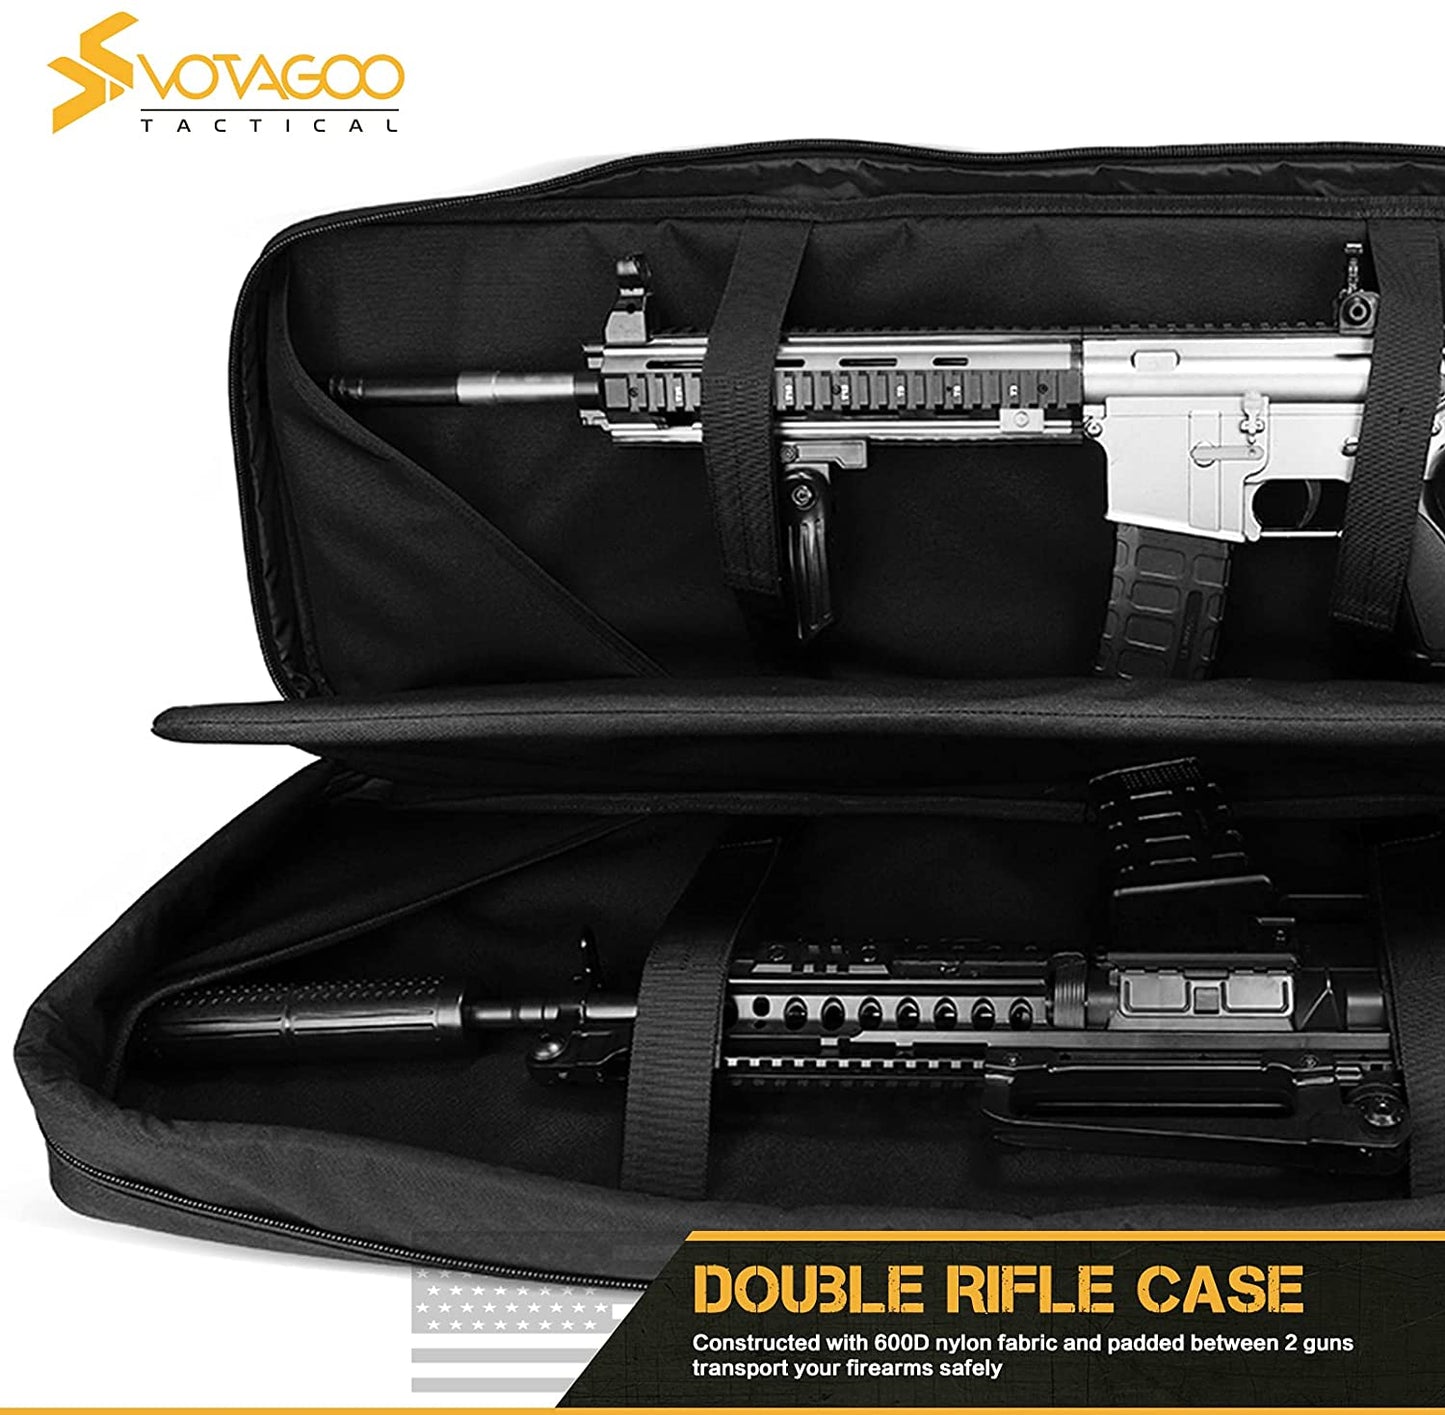 Votagoo Double Rifle Case Gun Bag